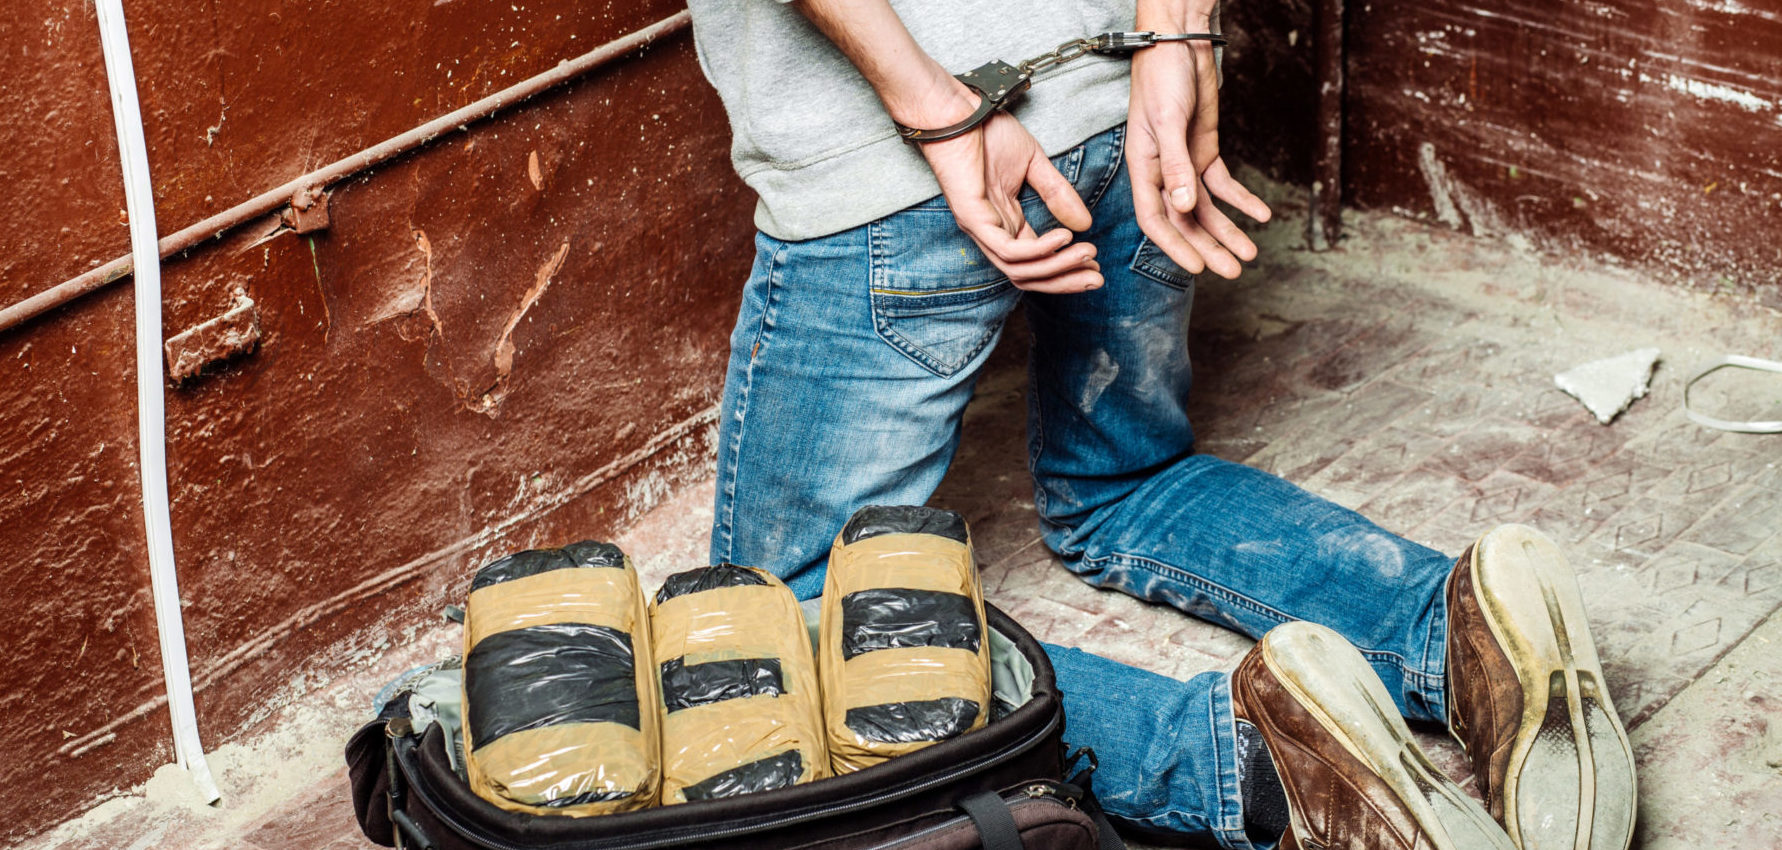 Négy kilogramm kokainnál is többet csempésztek a siófoki férfiak